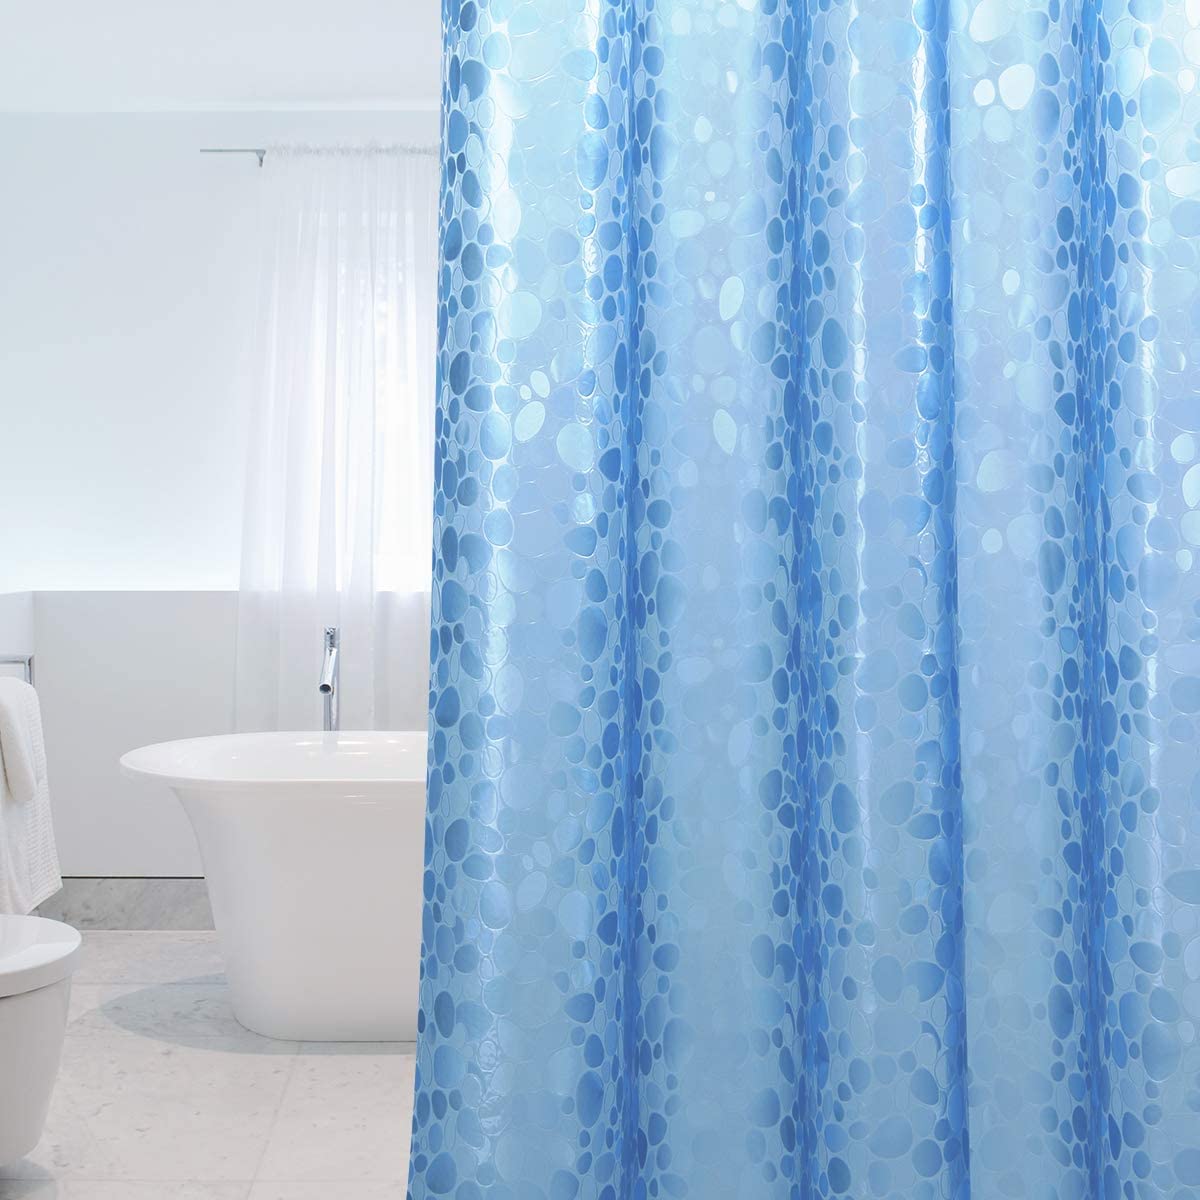 Se Badeforhæng - Smuk blåt mønster. Antibakterielt og vandtæt. 2 størrelser, 183 x 200 cm hos Seniorpleje